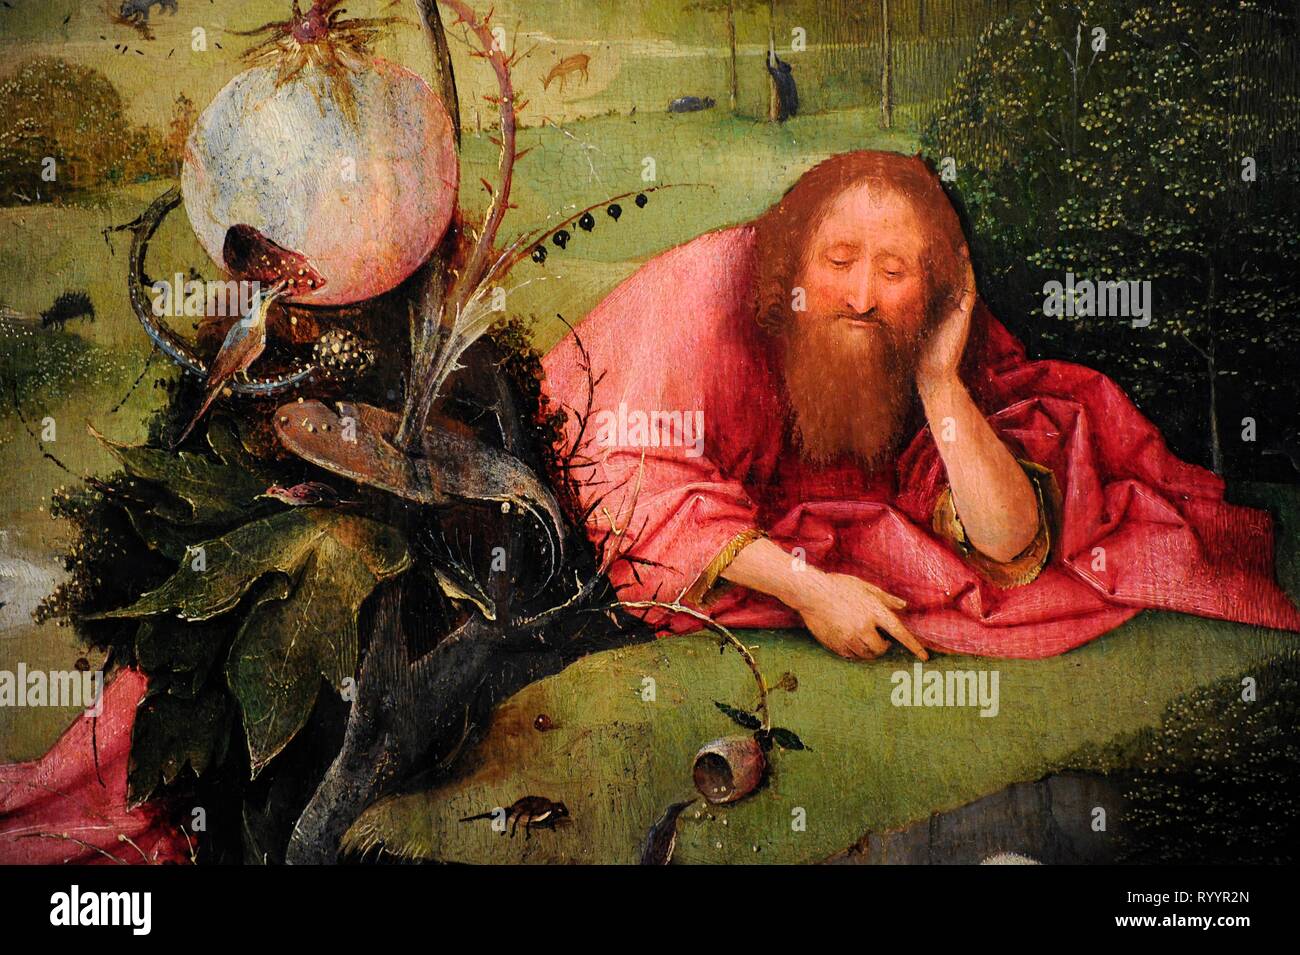 Bosch, Hieronymus Aeken Bosch o El Bosco (1450-1516). Pintor y grabador neerlandés, perteneciente a la Escuela Flamenca. Meditaciones de San Juan Bautista, hacia 1495. Detalle. Museo Lázaro Galdiano. Madrid. España. Stock Photo